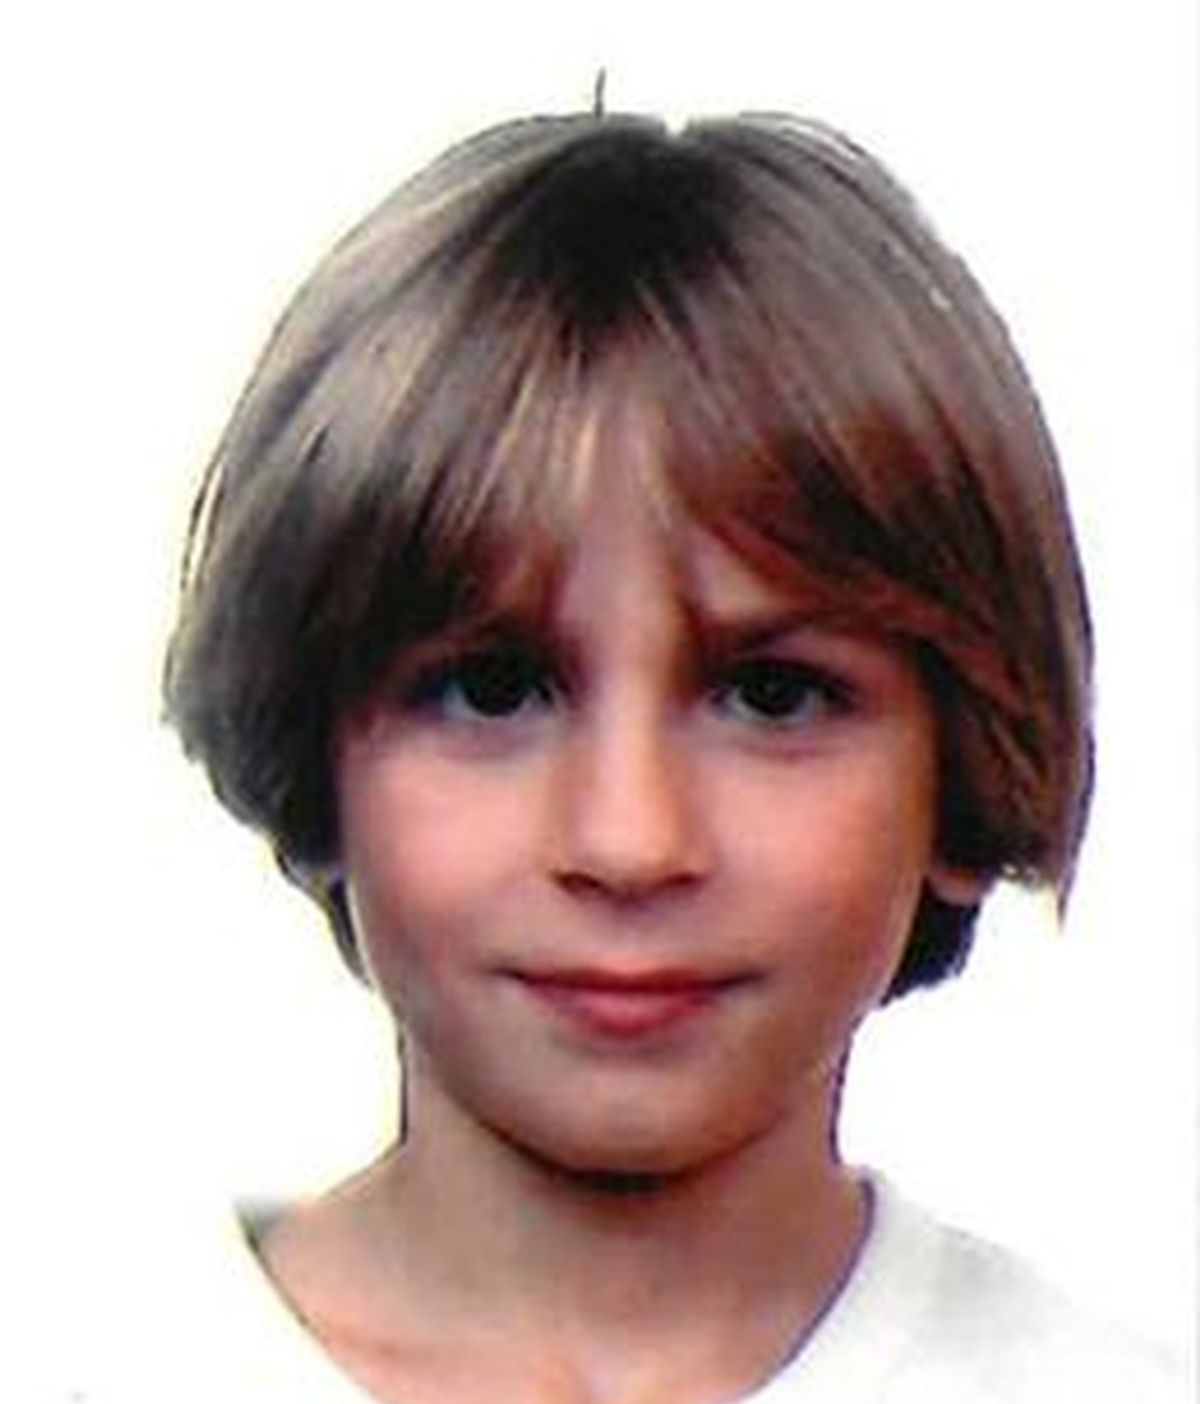 Niño desaparecido en Tarragona